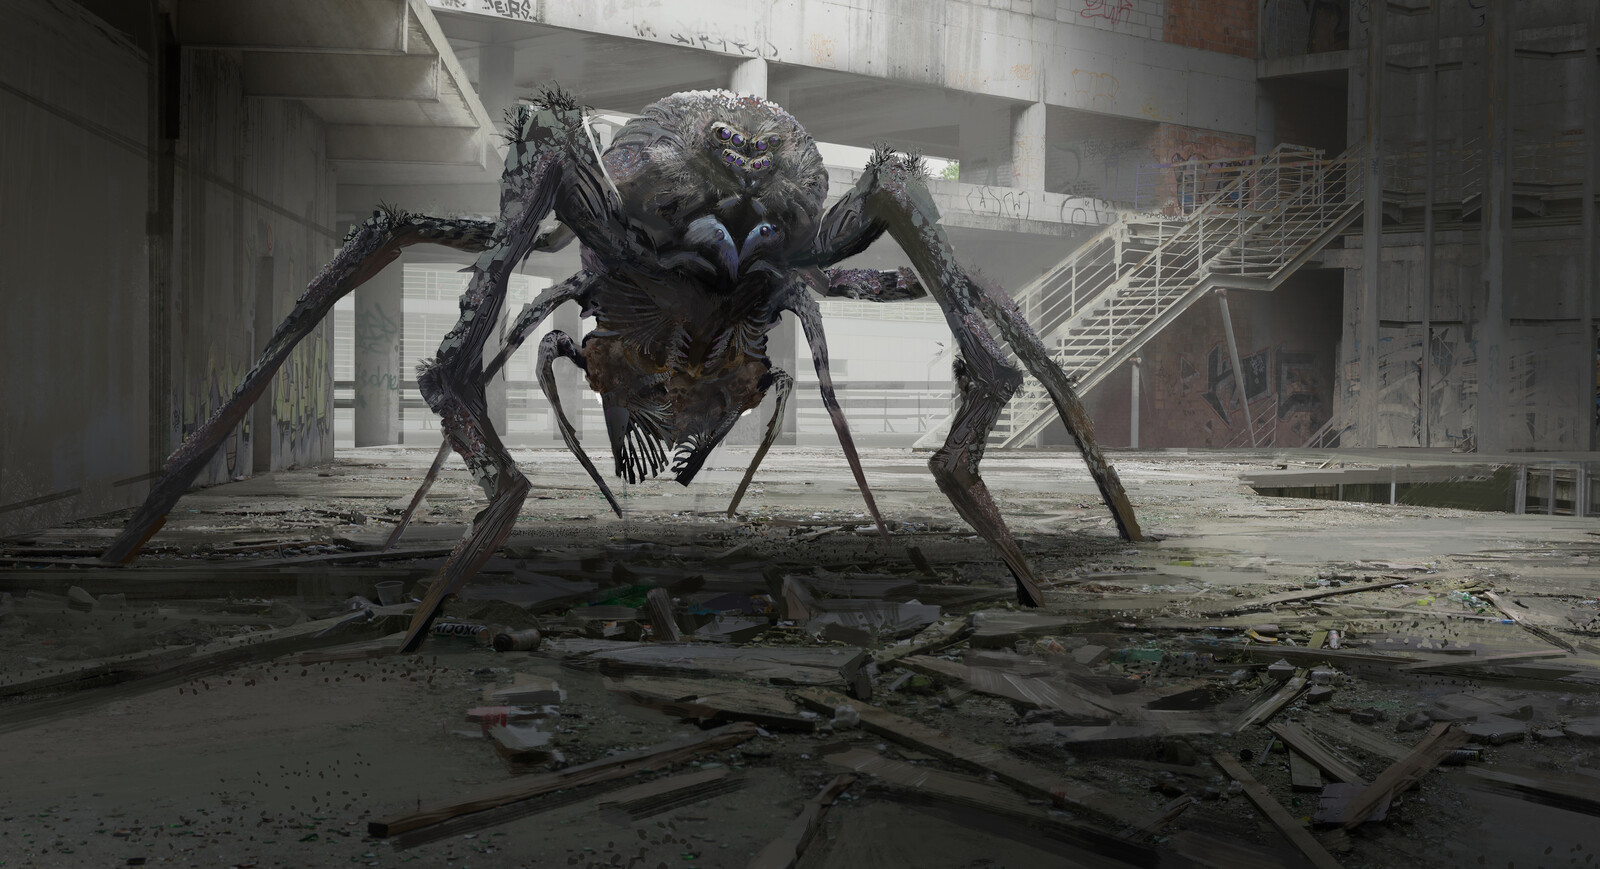 Spider monster in the scene test